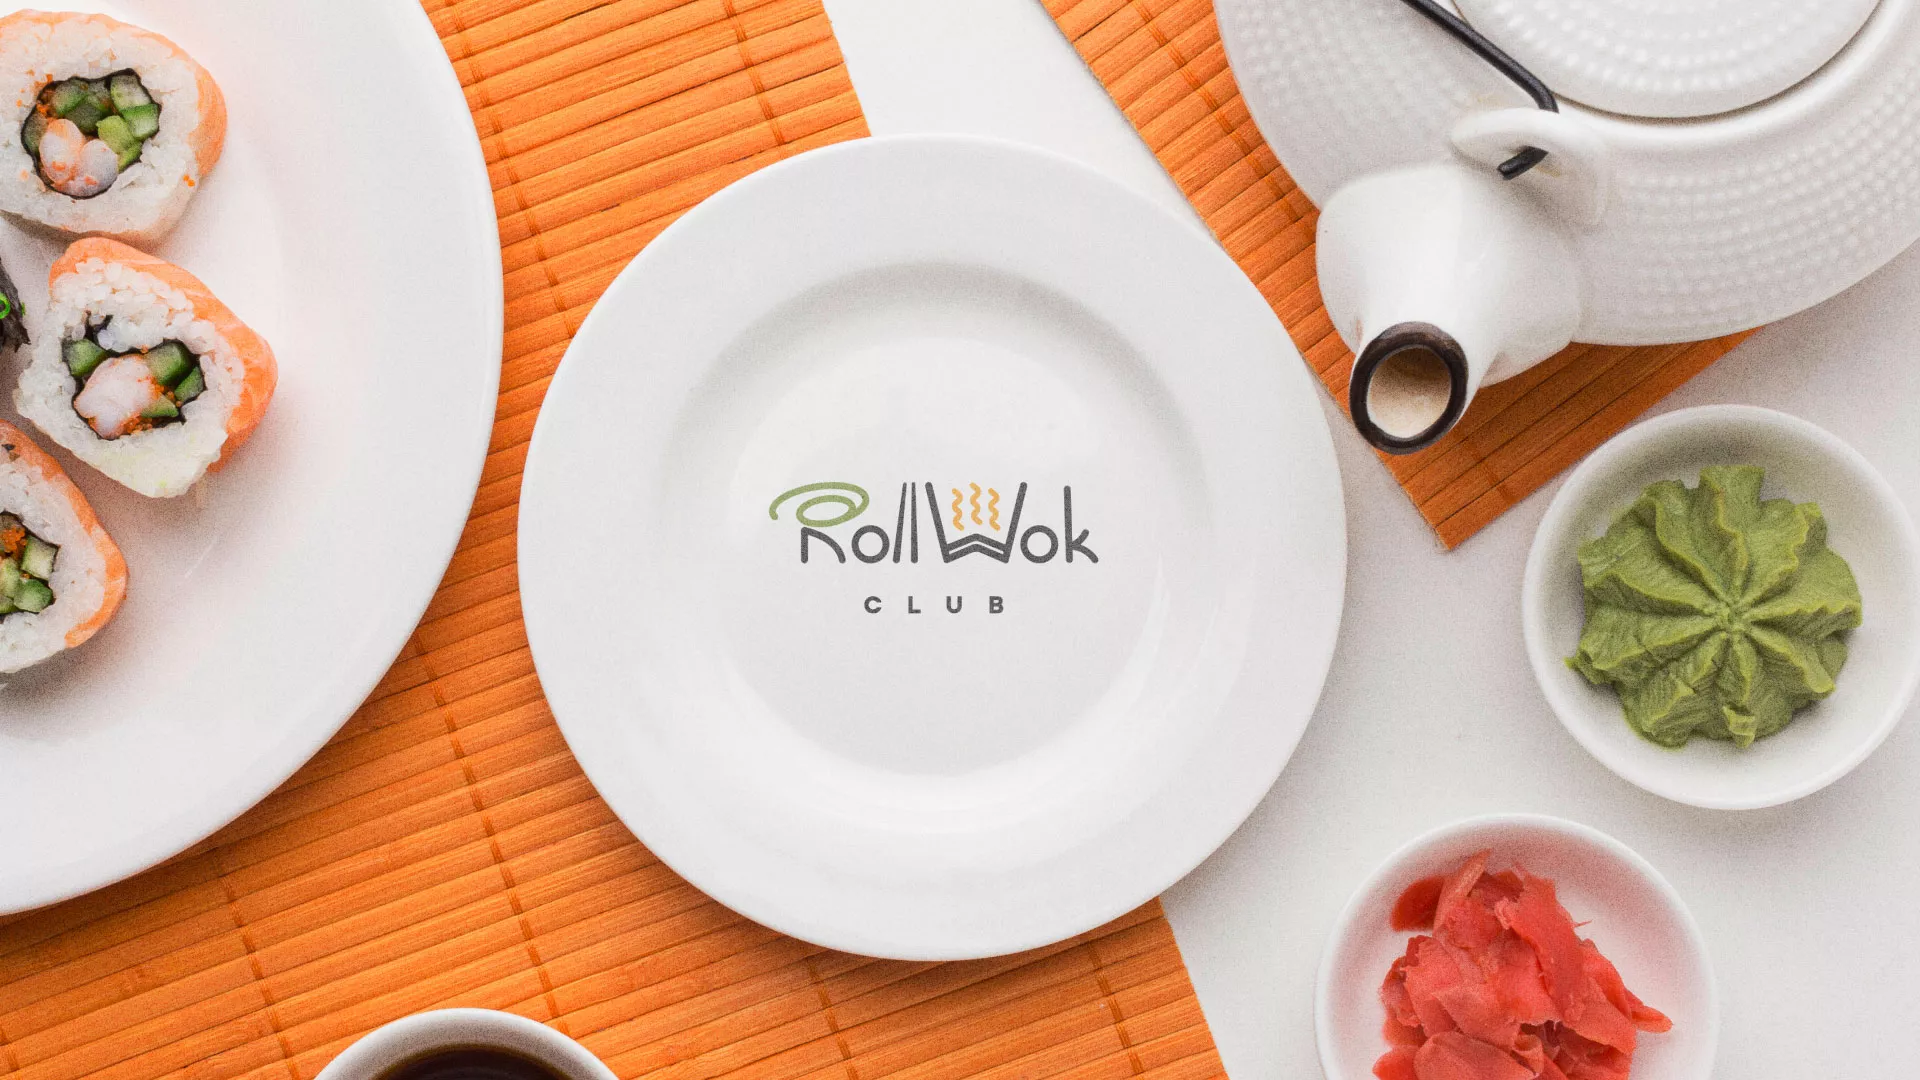 Разработка логотипа и фирменного стиля суши-бара «Roll Wok Club» в Рославле